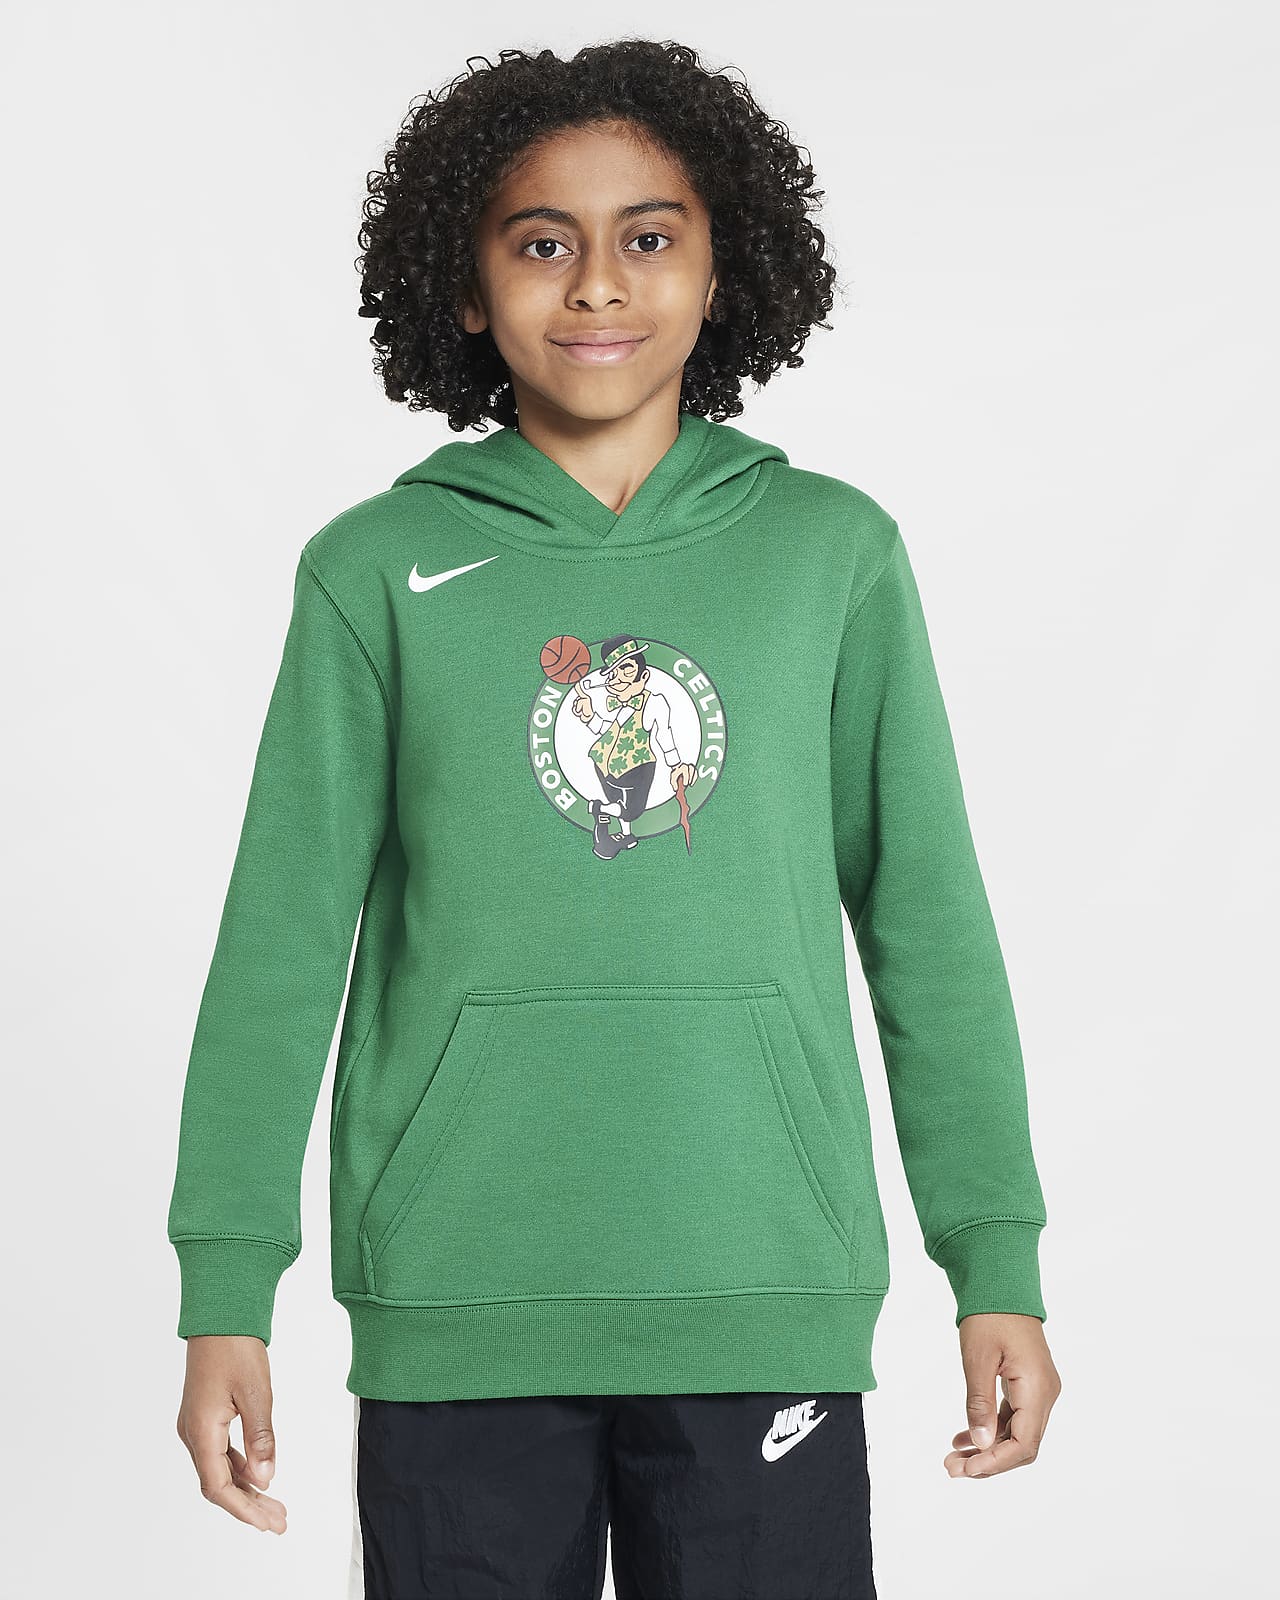 Flísová mikina Nike NBA Boston Celtics Club s kapucí pro větší děti